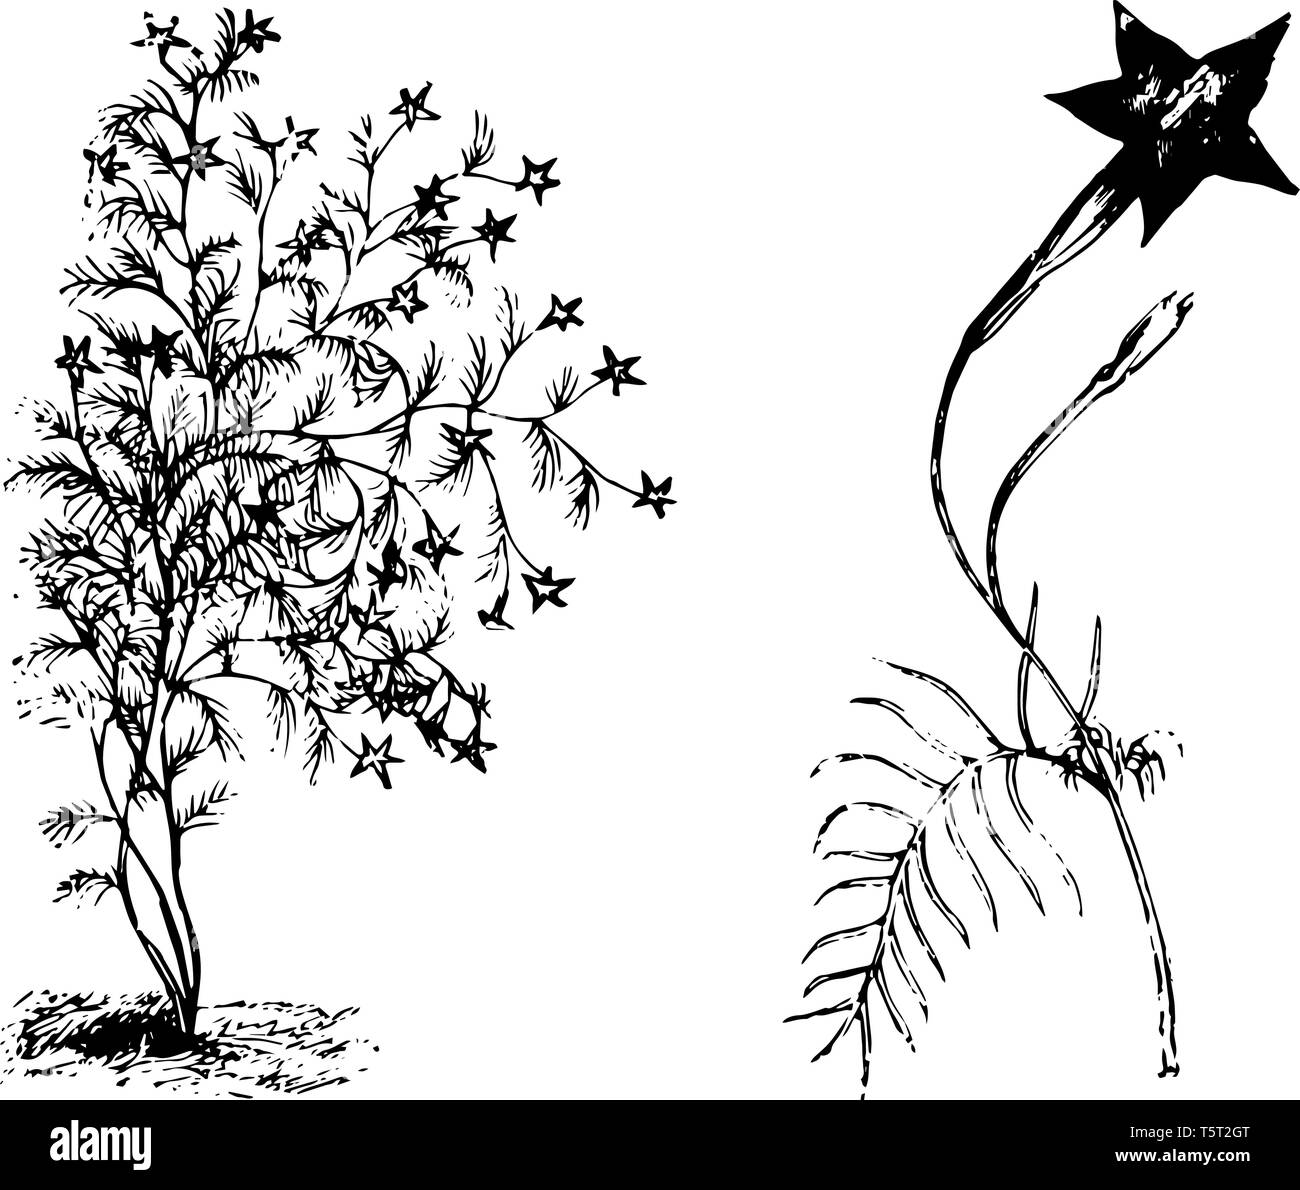 Das Bild zeigt die Gewohnheit und losgelöst von ipomoea Quamoclit Branchlet blühende Pflanze. Es hat dunkle Rot, sternförmigen, längliche Blume und Lea Trichter Stock Vektor